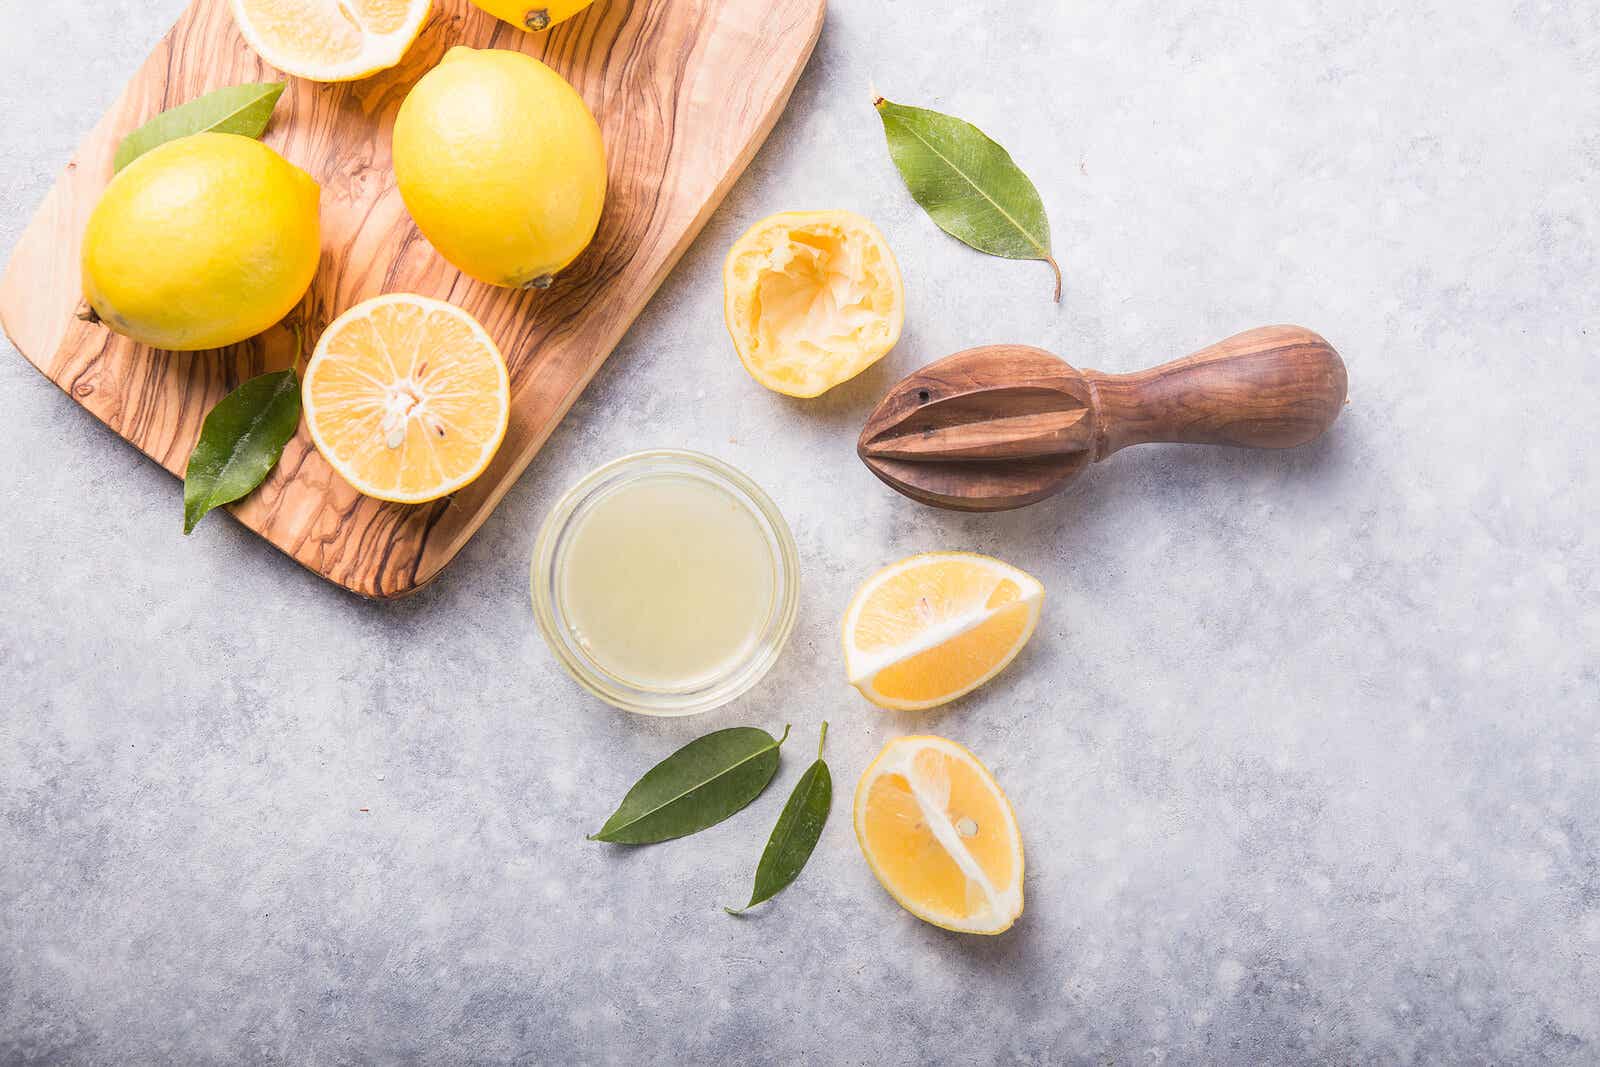 Comer limón a diario podría brindar varios beneficios a la salud.